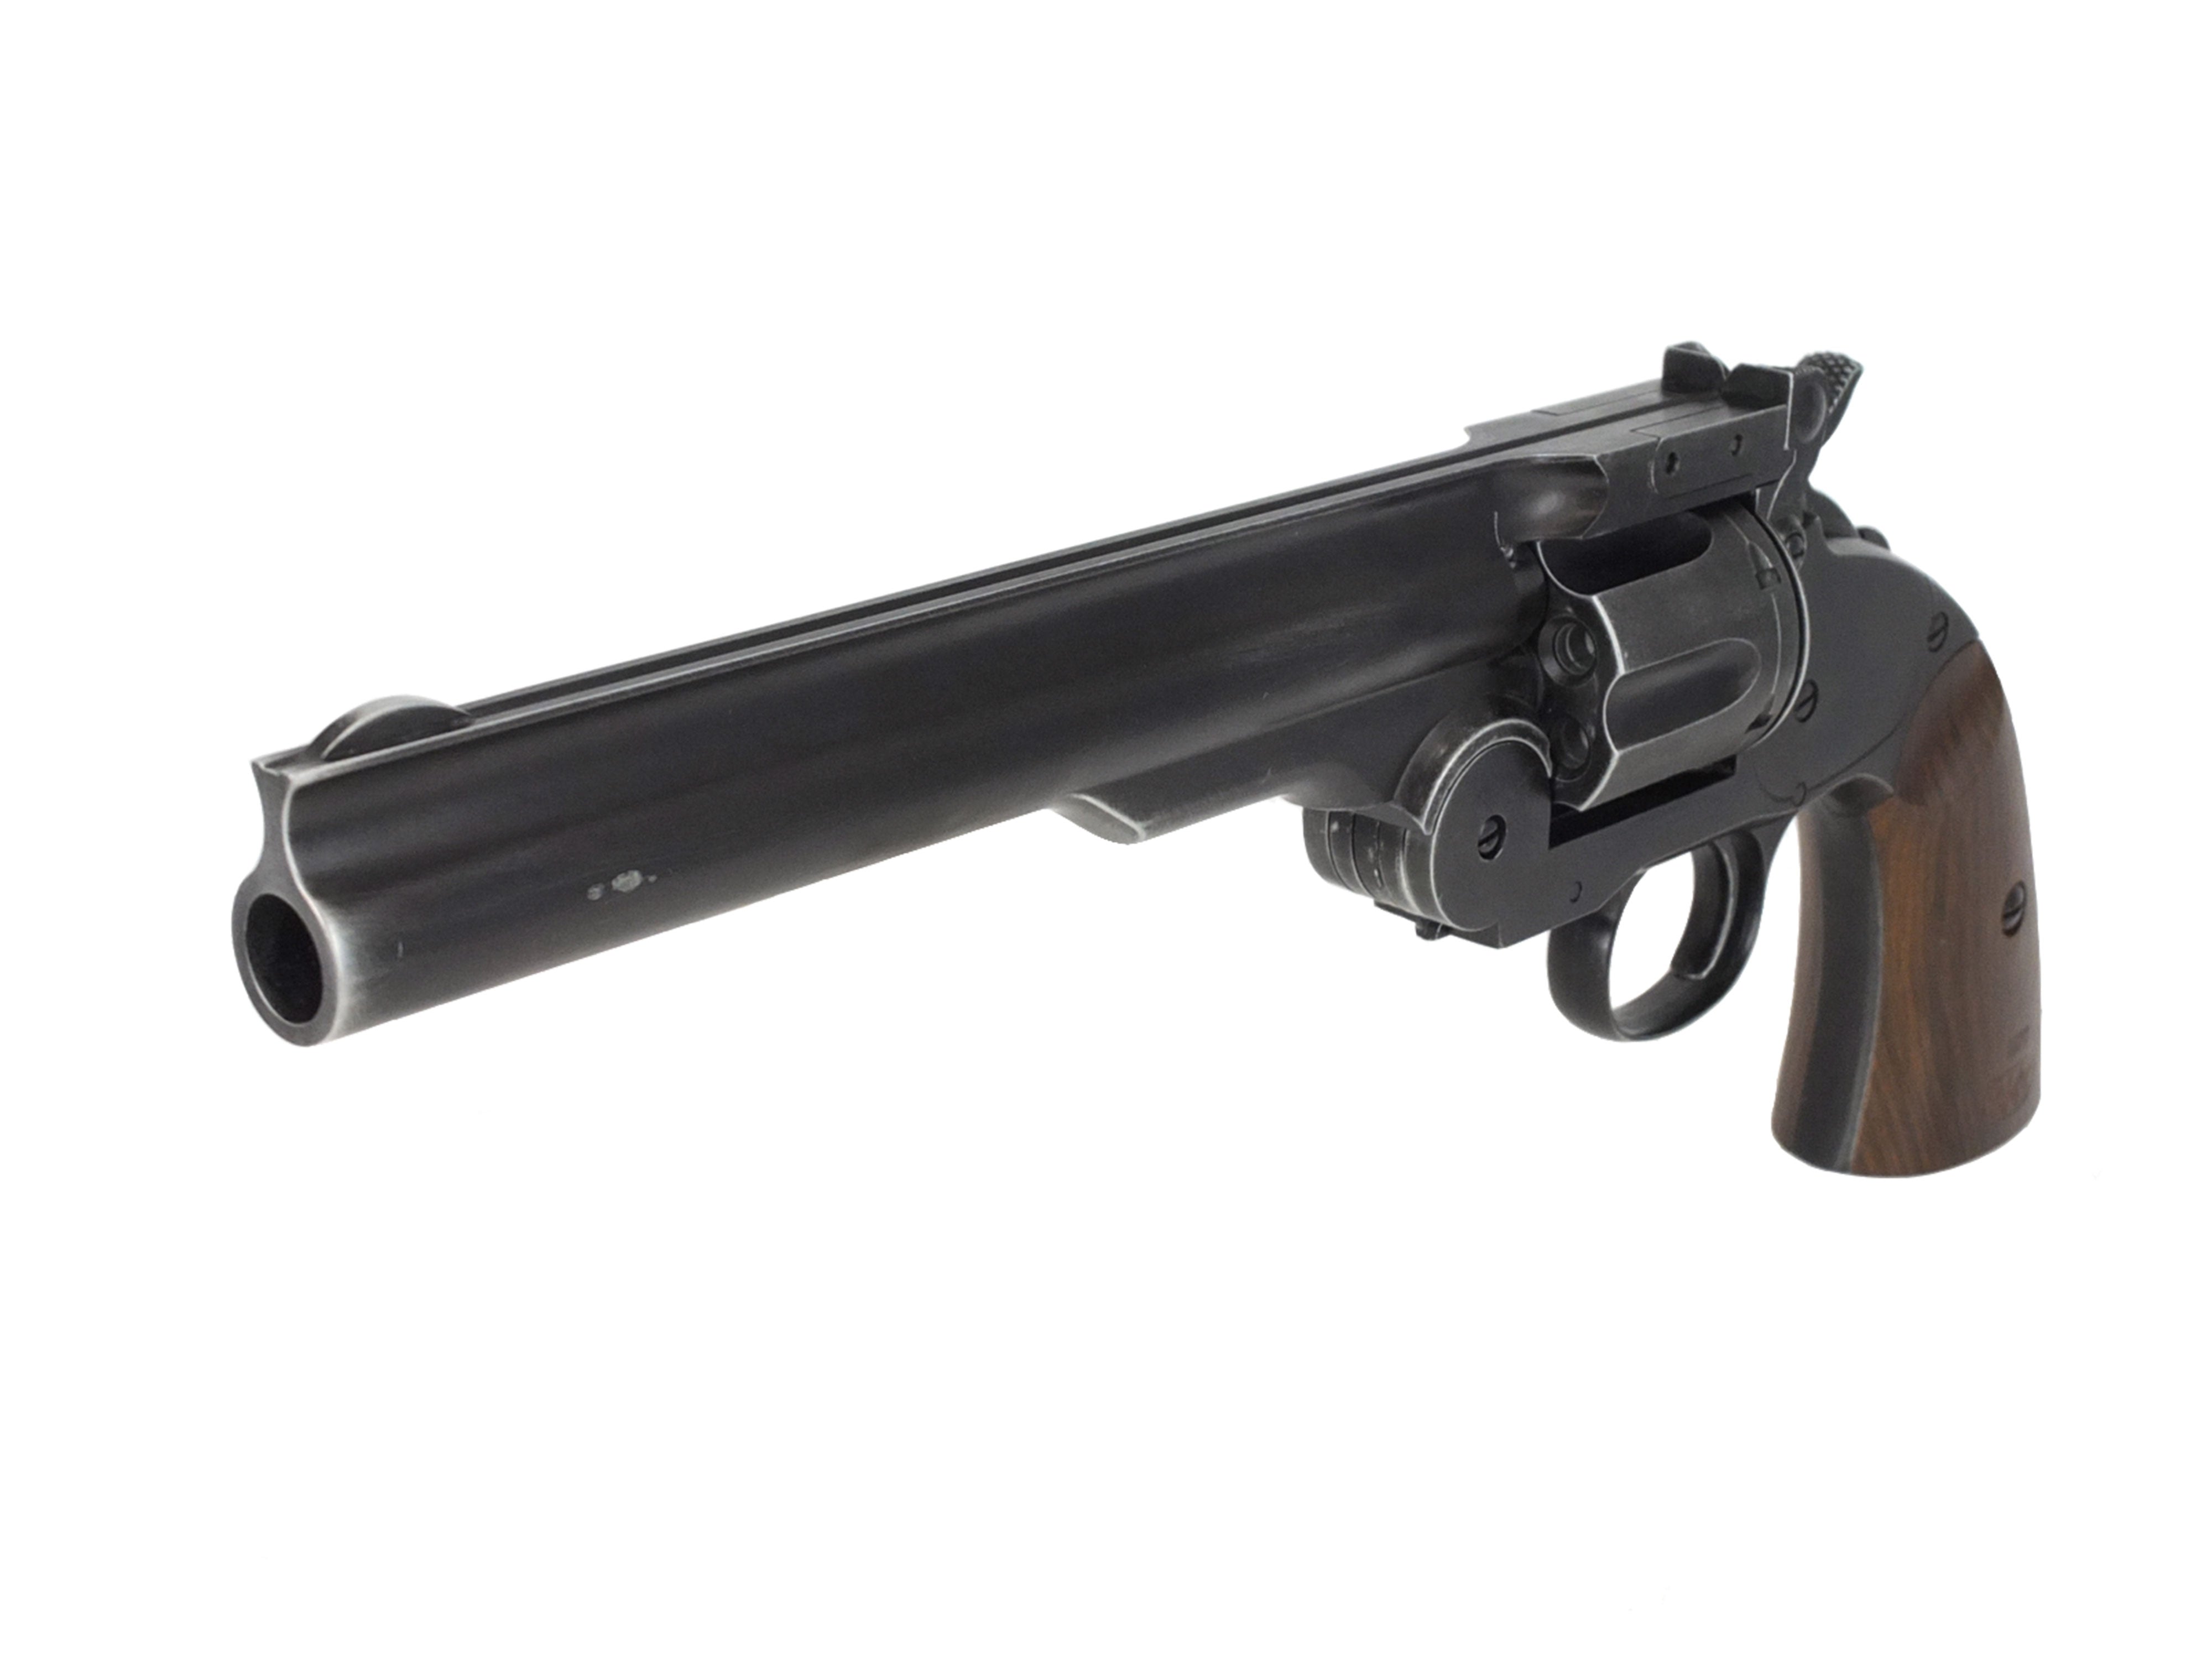 即納好評WG社製 Smith&Wesson 1877 MAJOR3 6mmBB弾仕様パーツセット・・・・WA マルイ WE タナカ CAW マルシン HWS ハートフォード と互換不明 パーツ